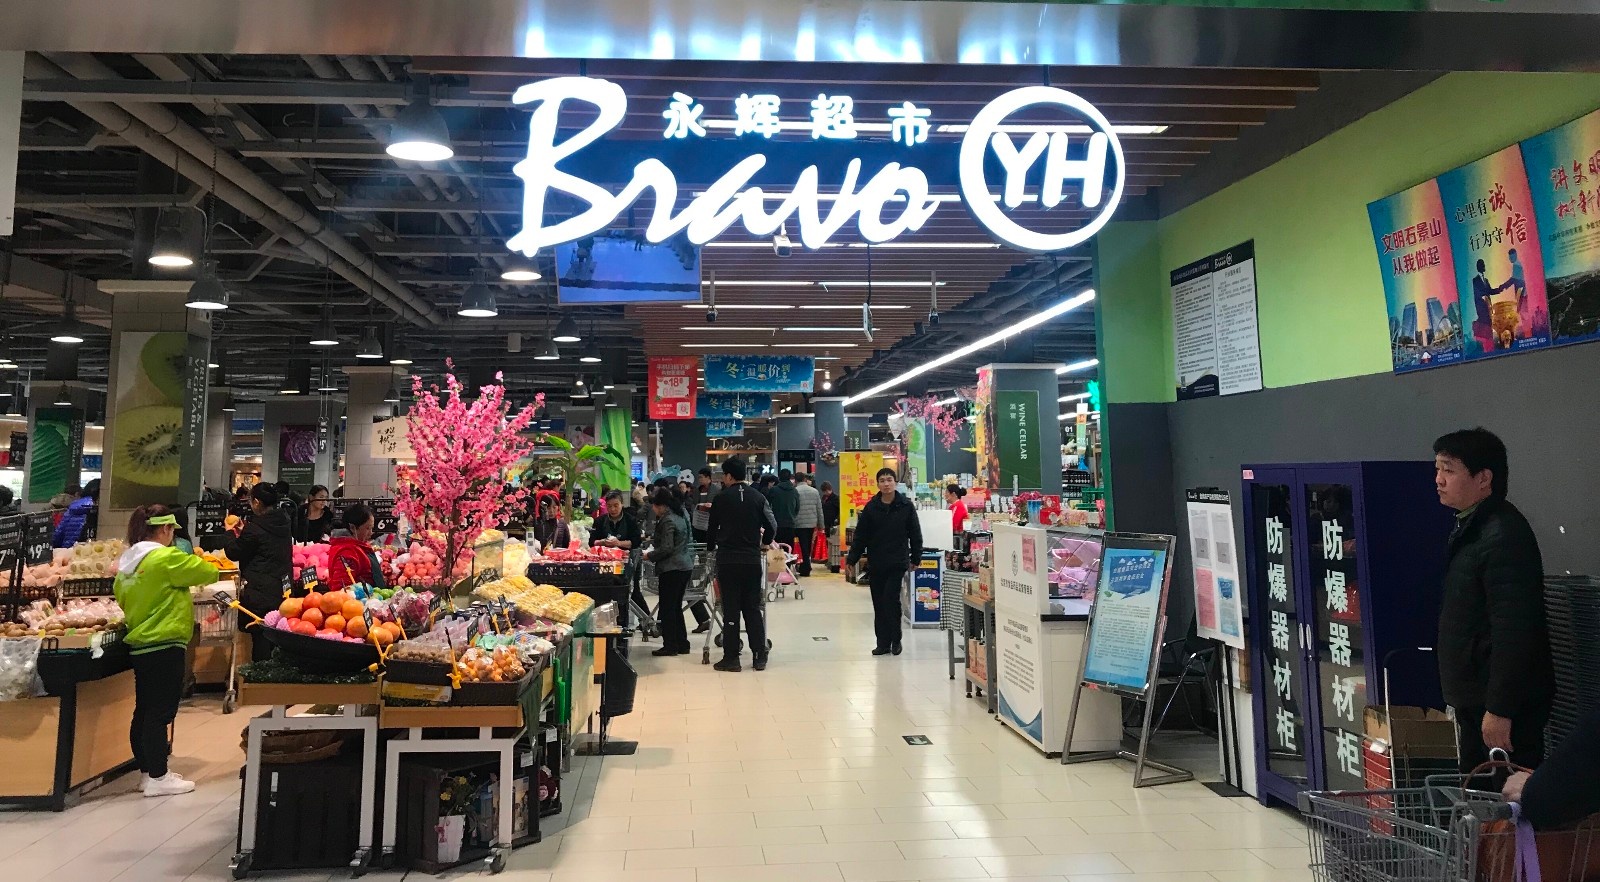 生鲜超市品牌:永辉超市生鲜采购模式分析